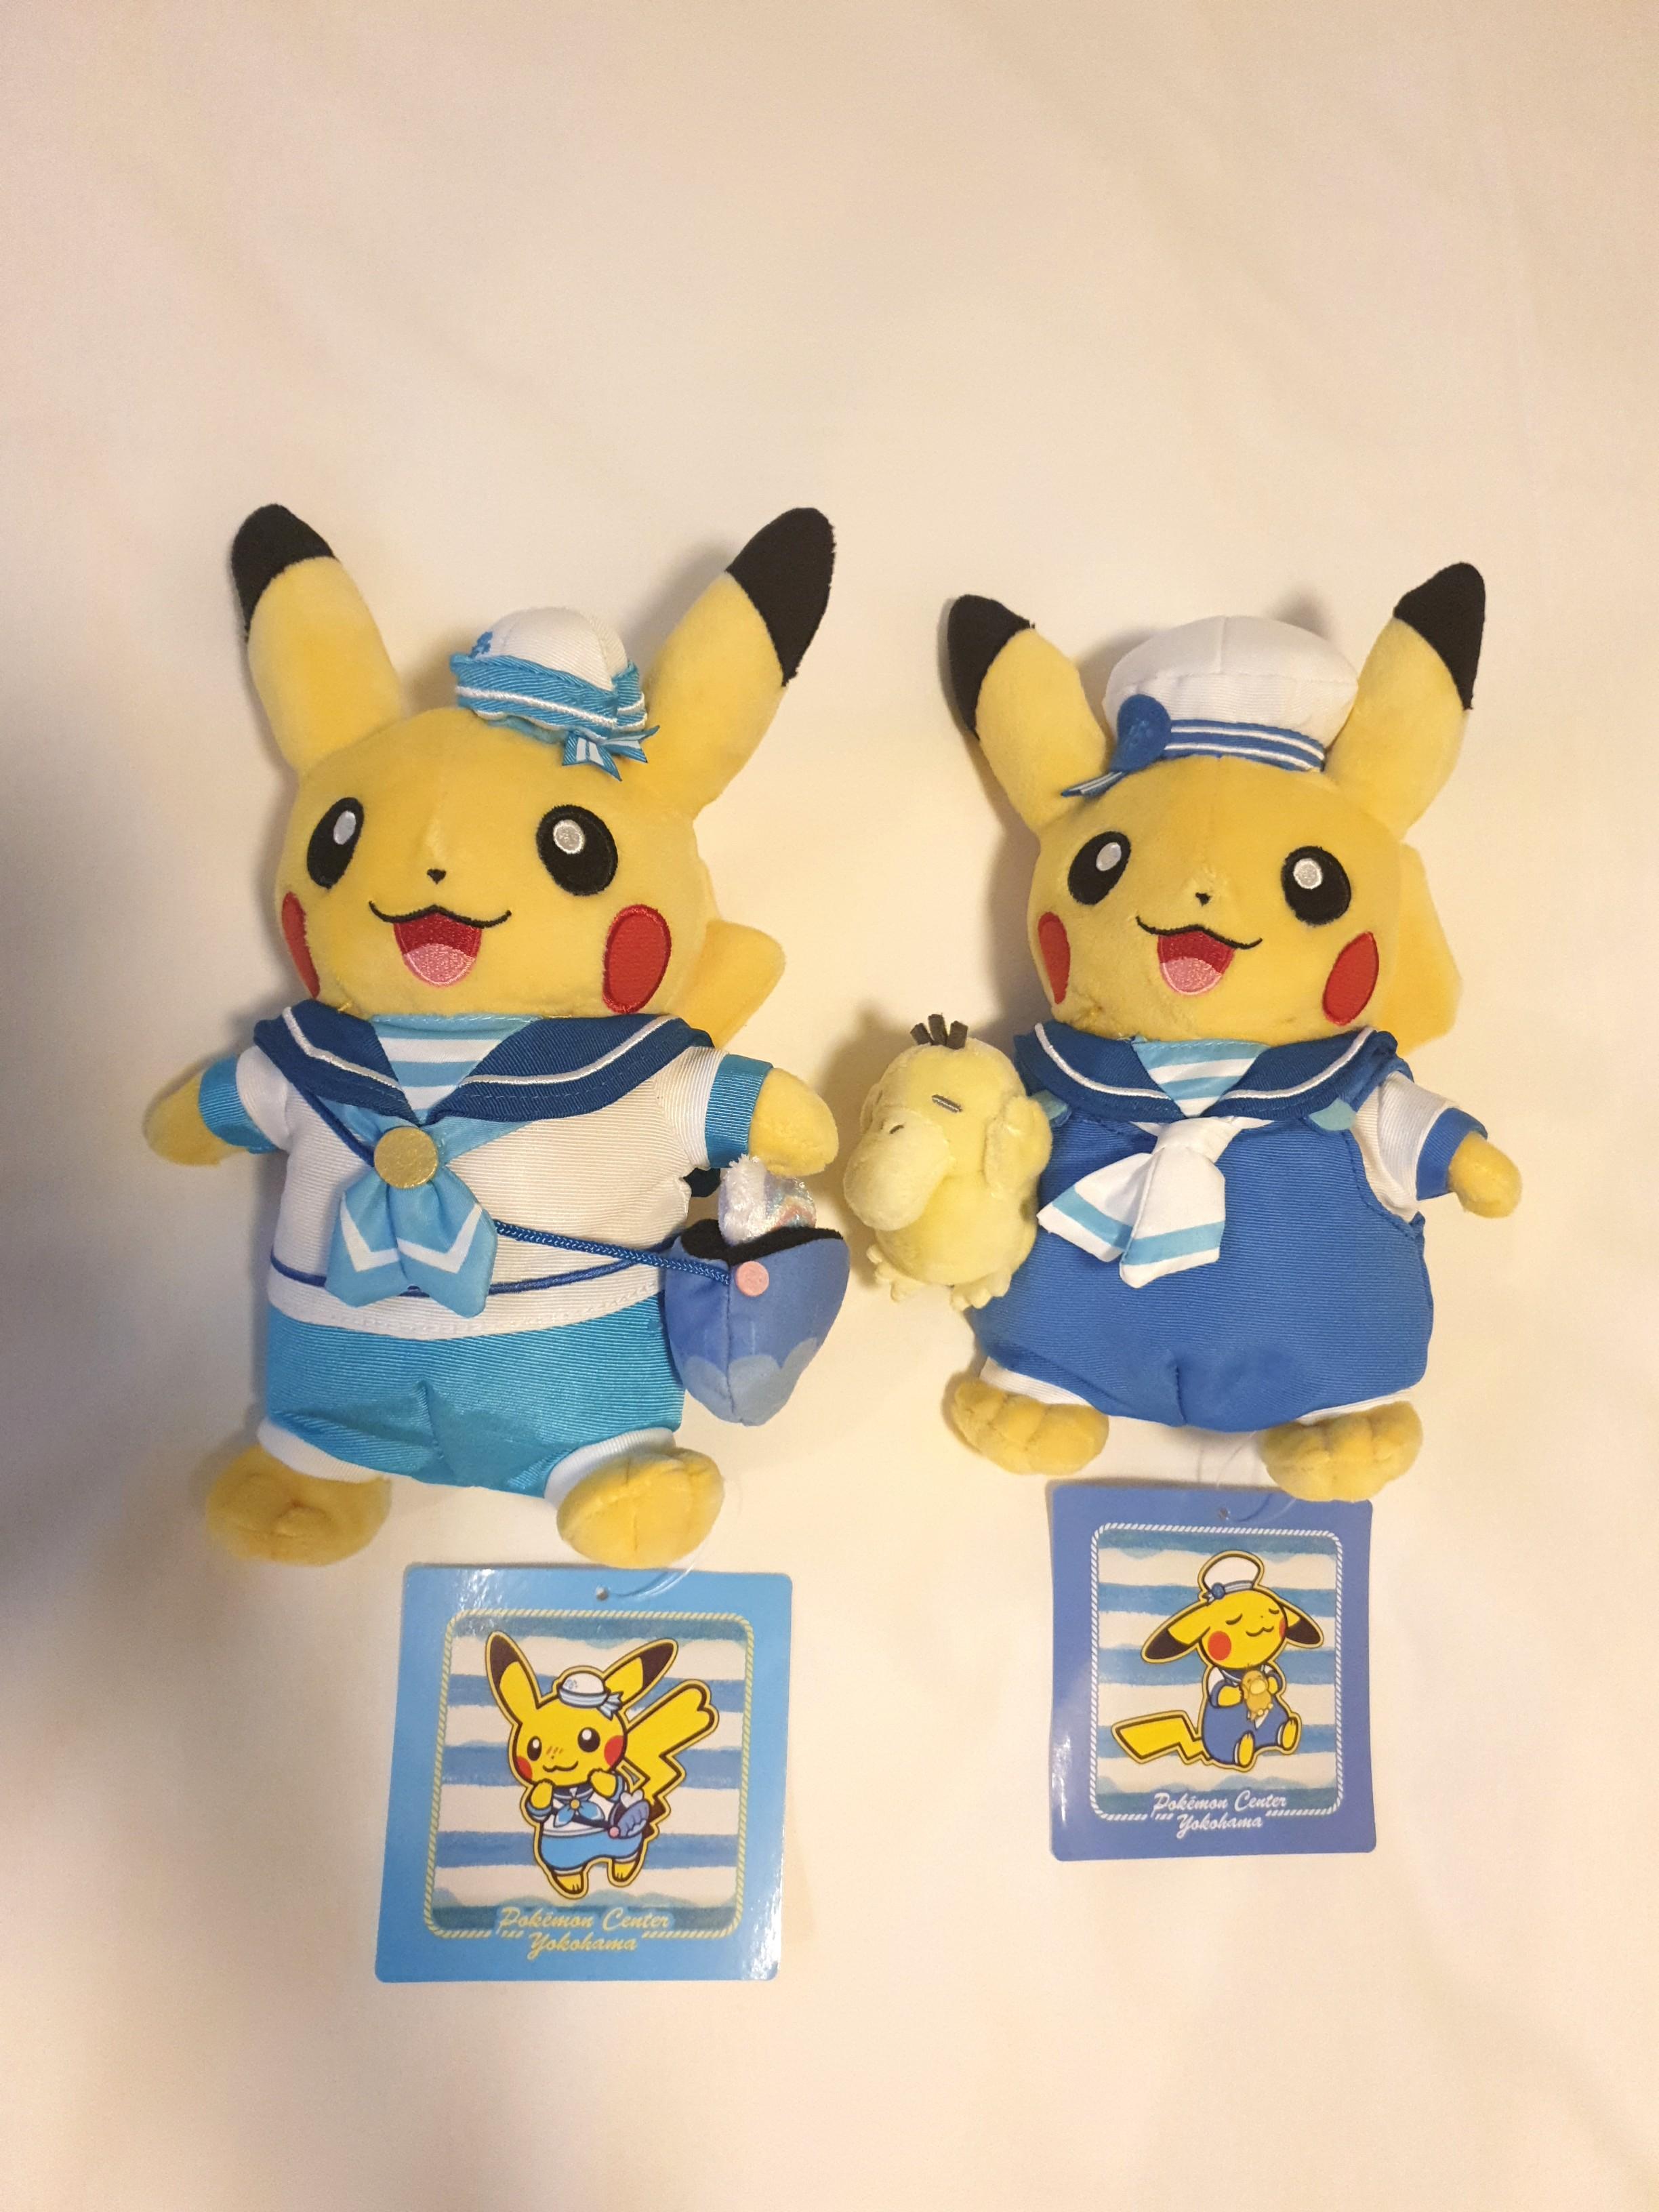 Pikachu Yokohama Pokemon Centre Exclusive Hobbies Toys Toys Games On Carousell